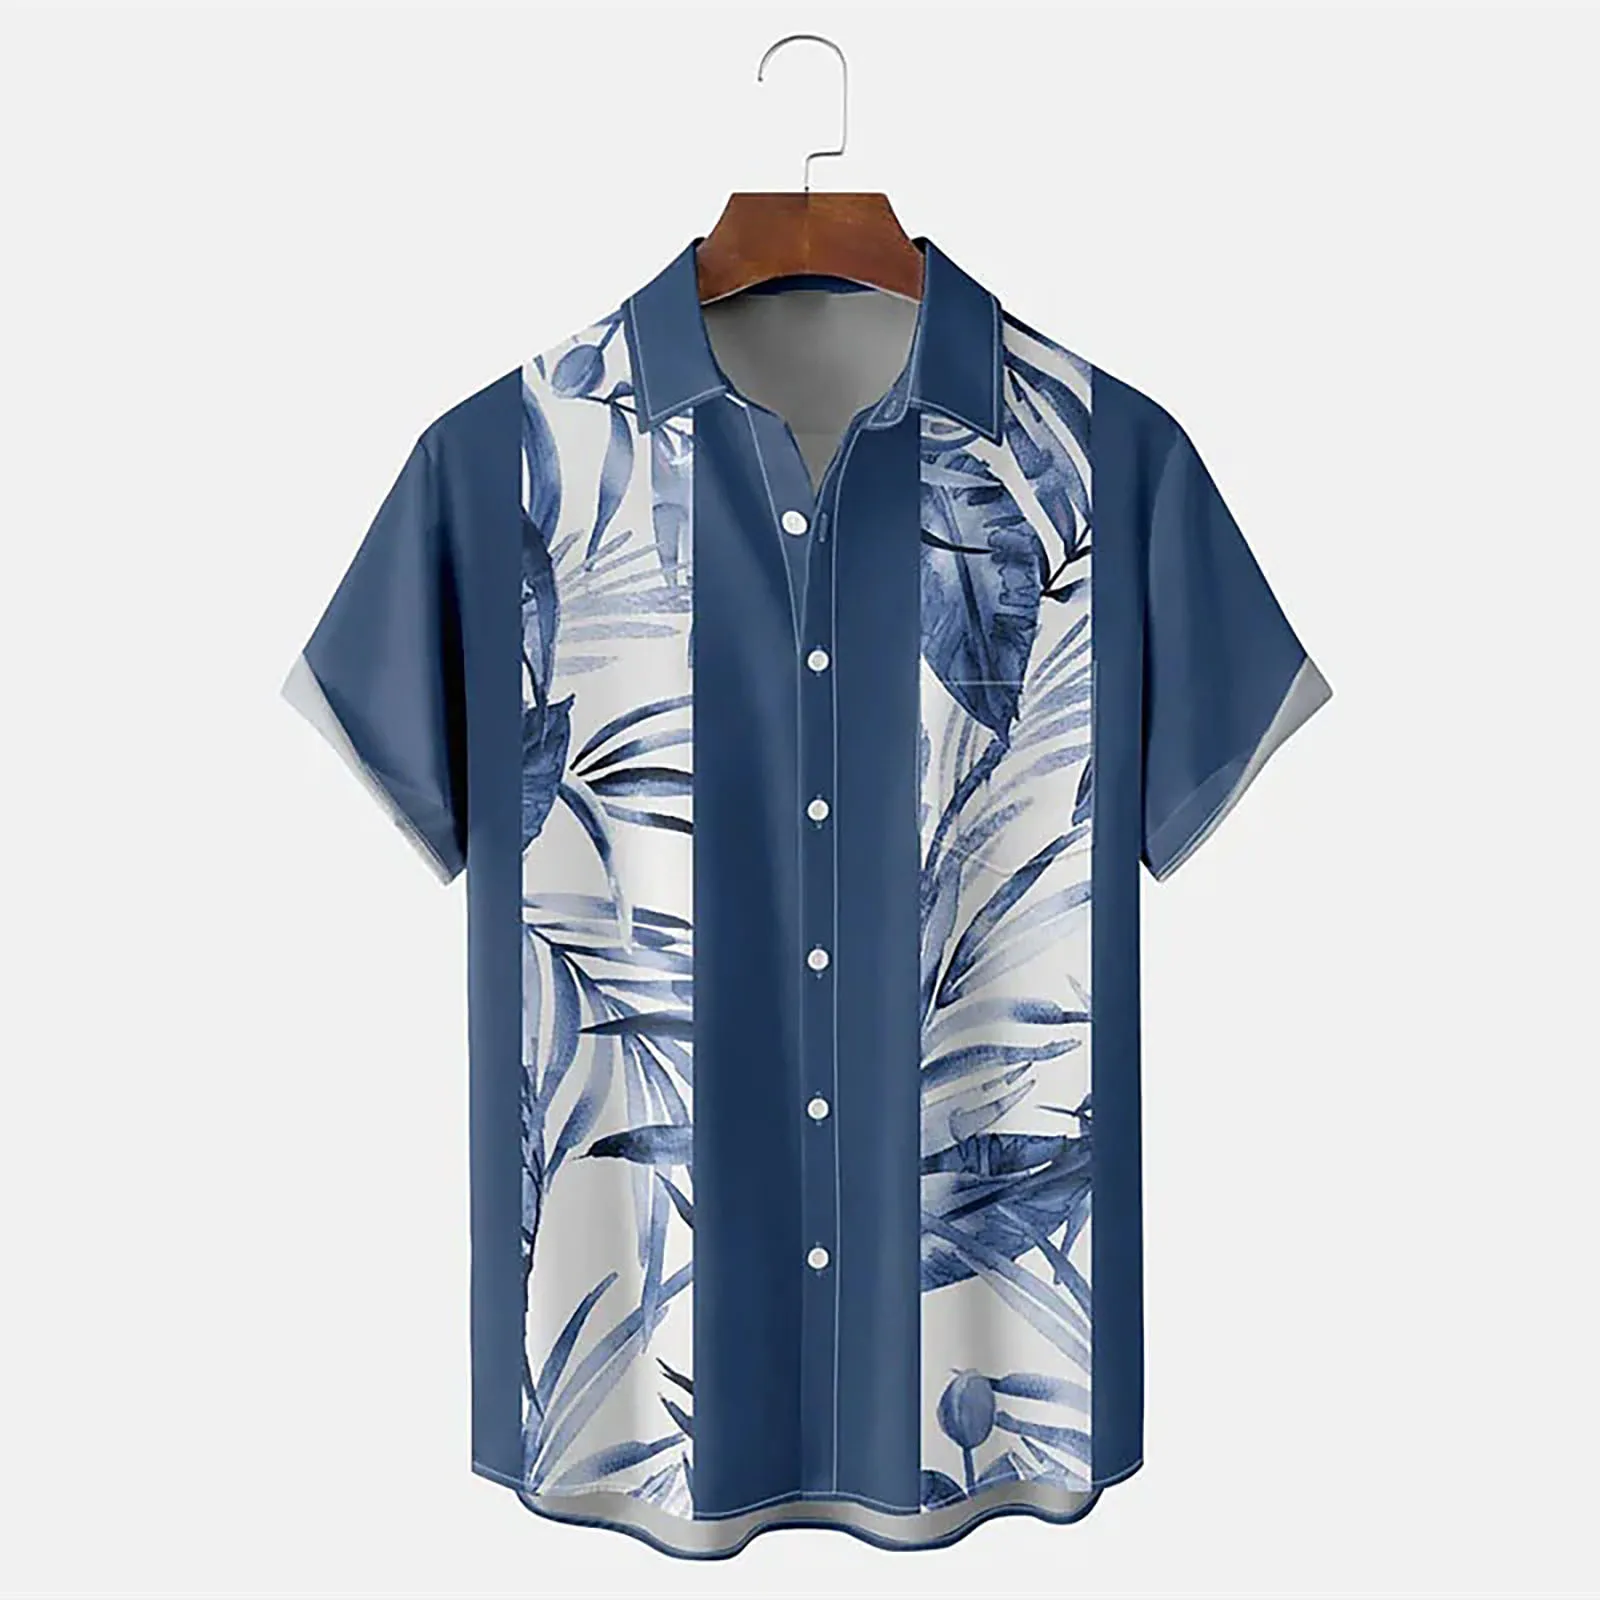 

Мужская пляжная рубашка с пуговицами, голубая рубашка с цветочным принтом, с тропическим принтом, для отдыха, уличная одежда для весны и осени,